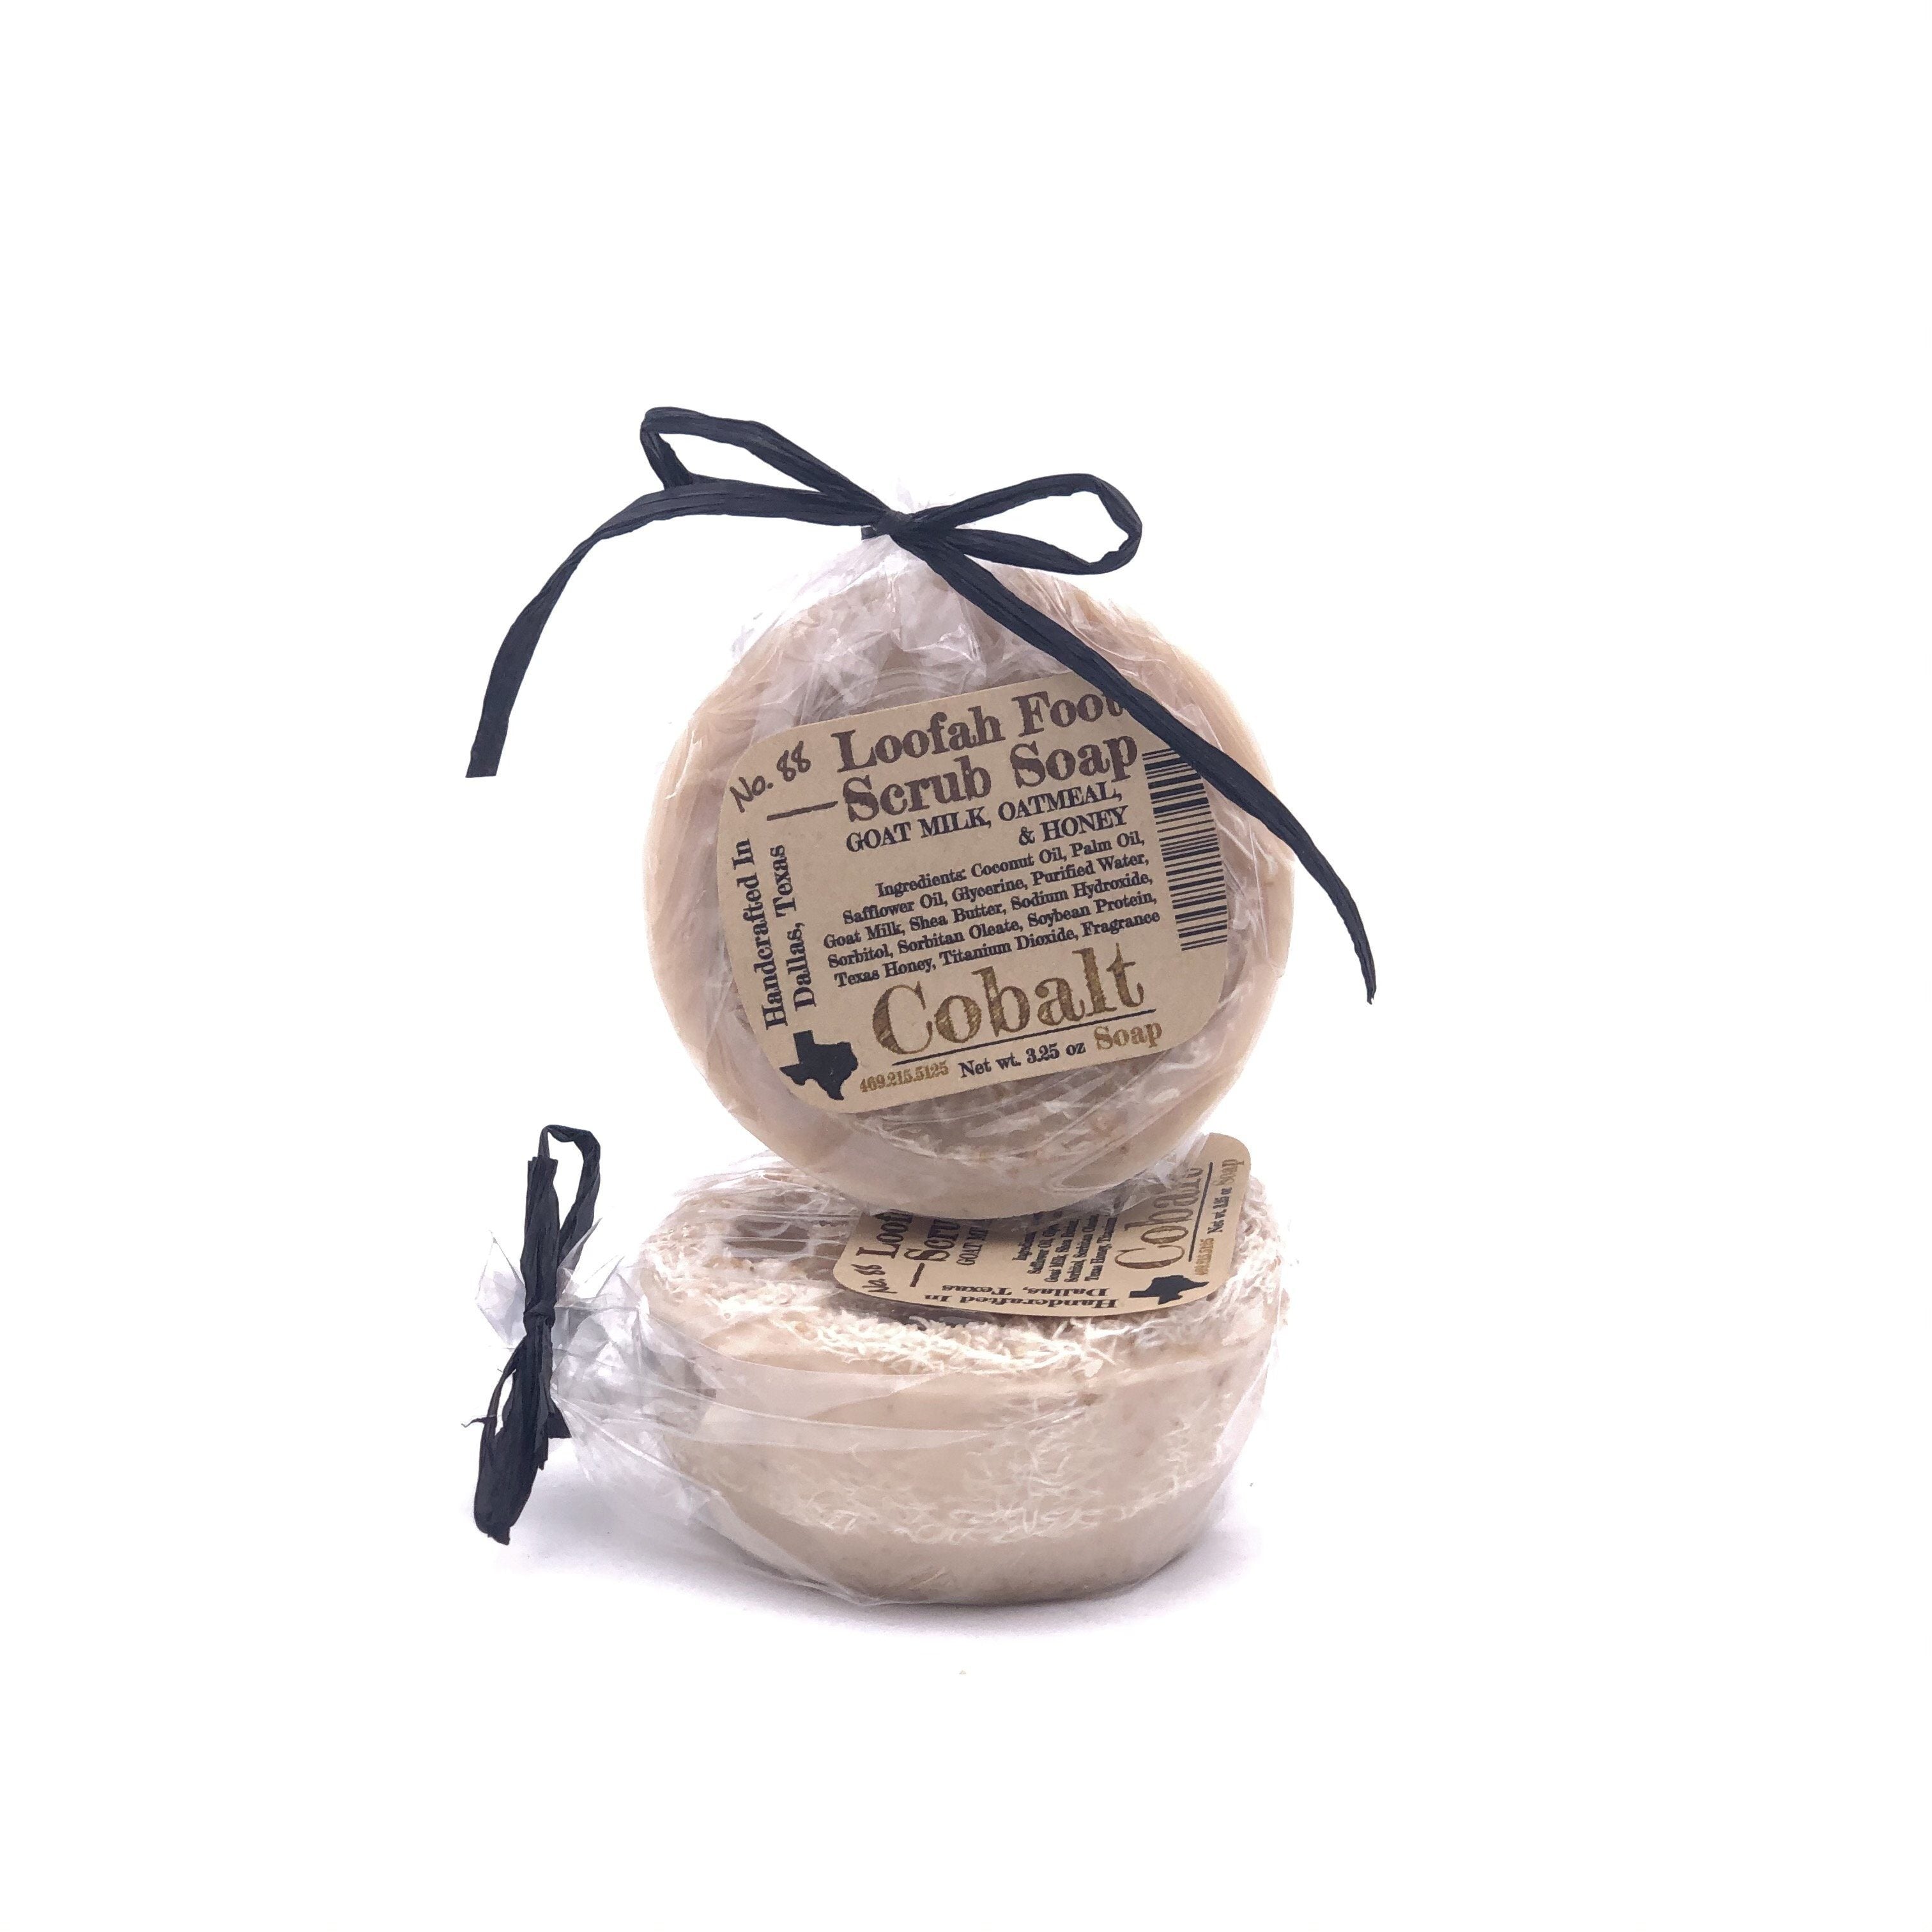 Jabón de cobalto no. 88 - Jabón Exfoliante para Pies de Lufa Leche de Cabra y Miel